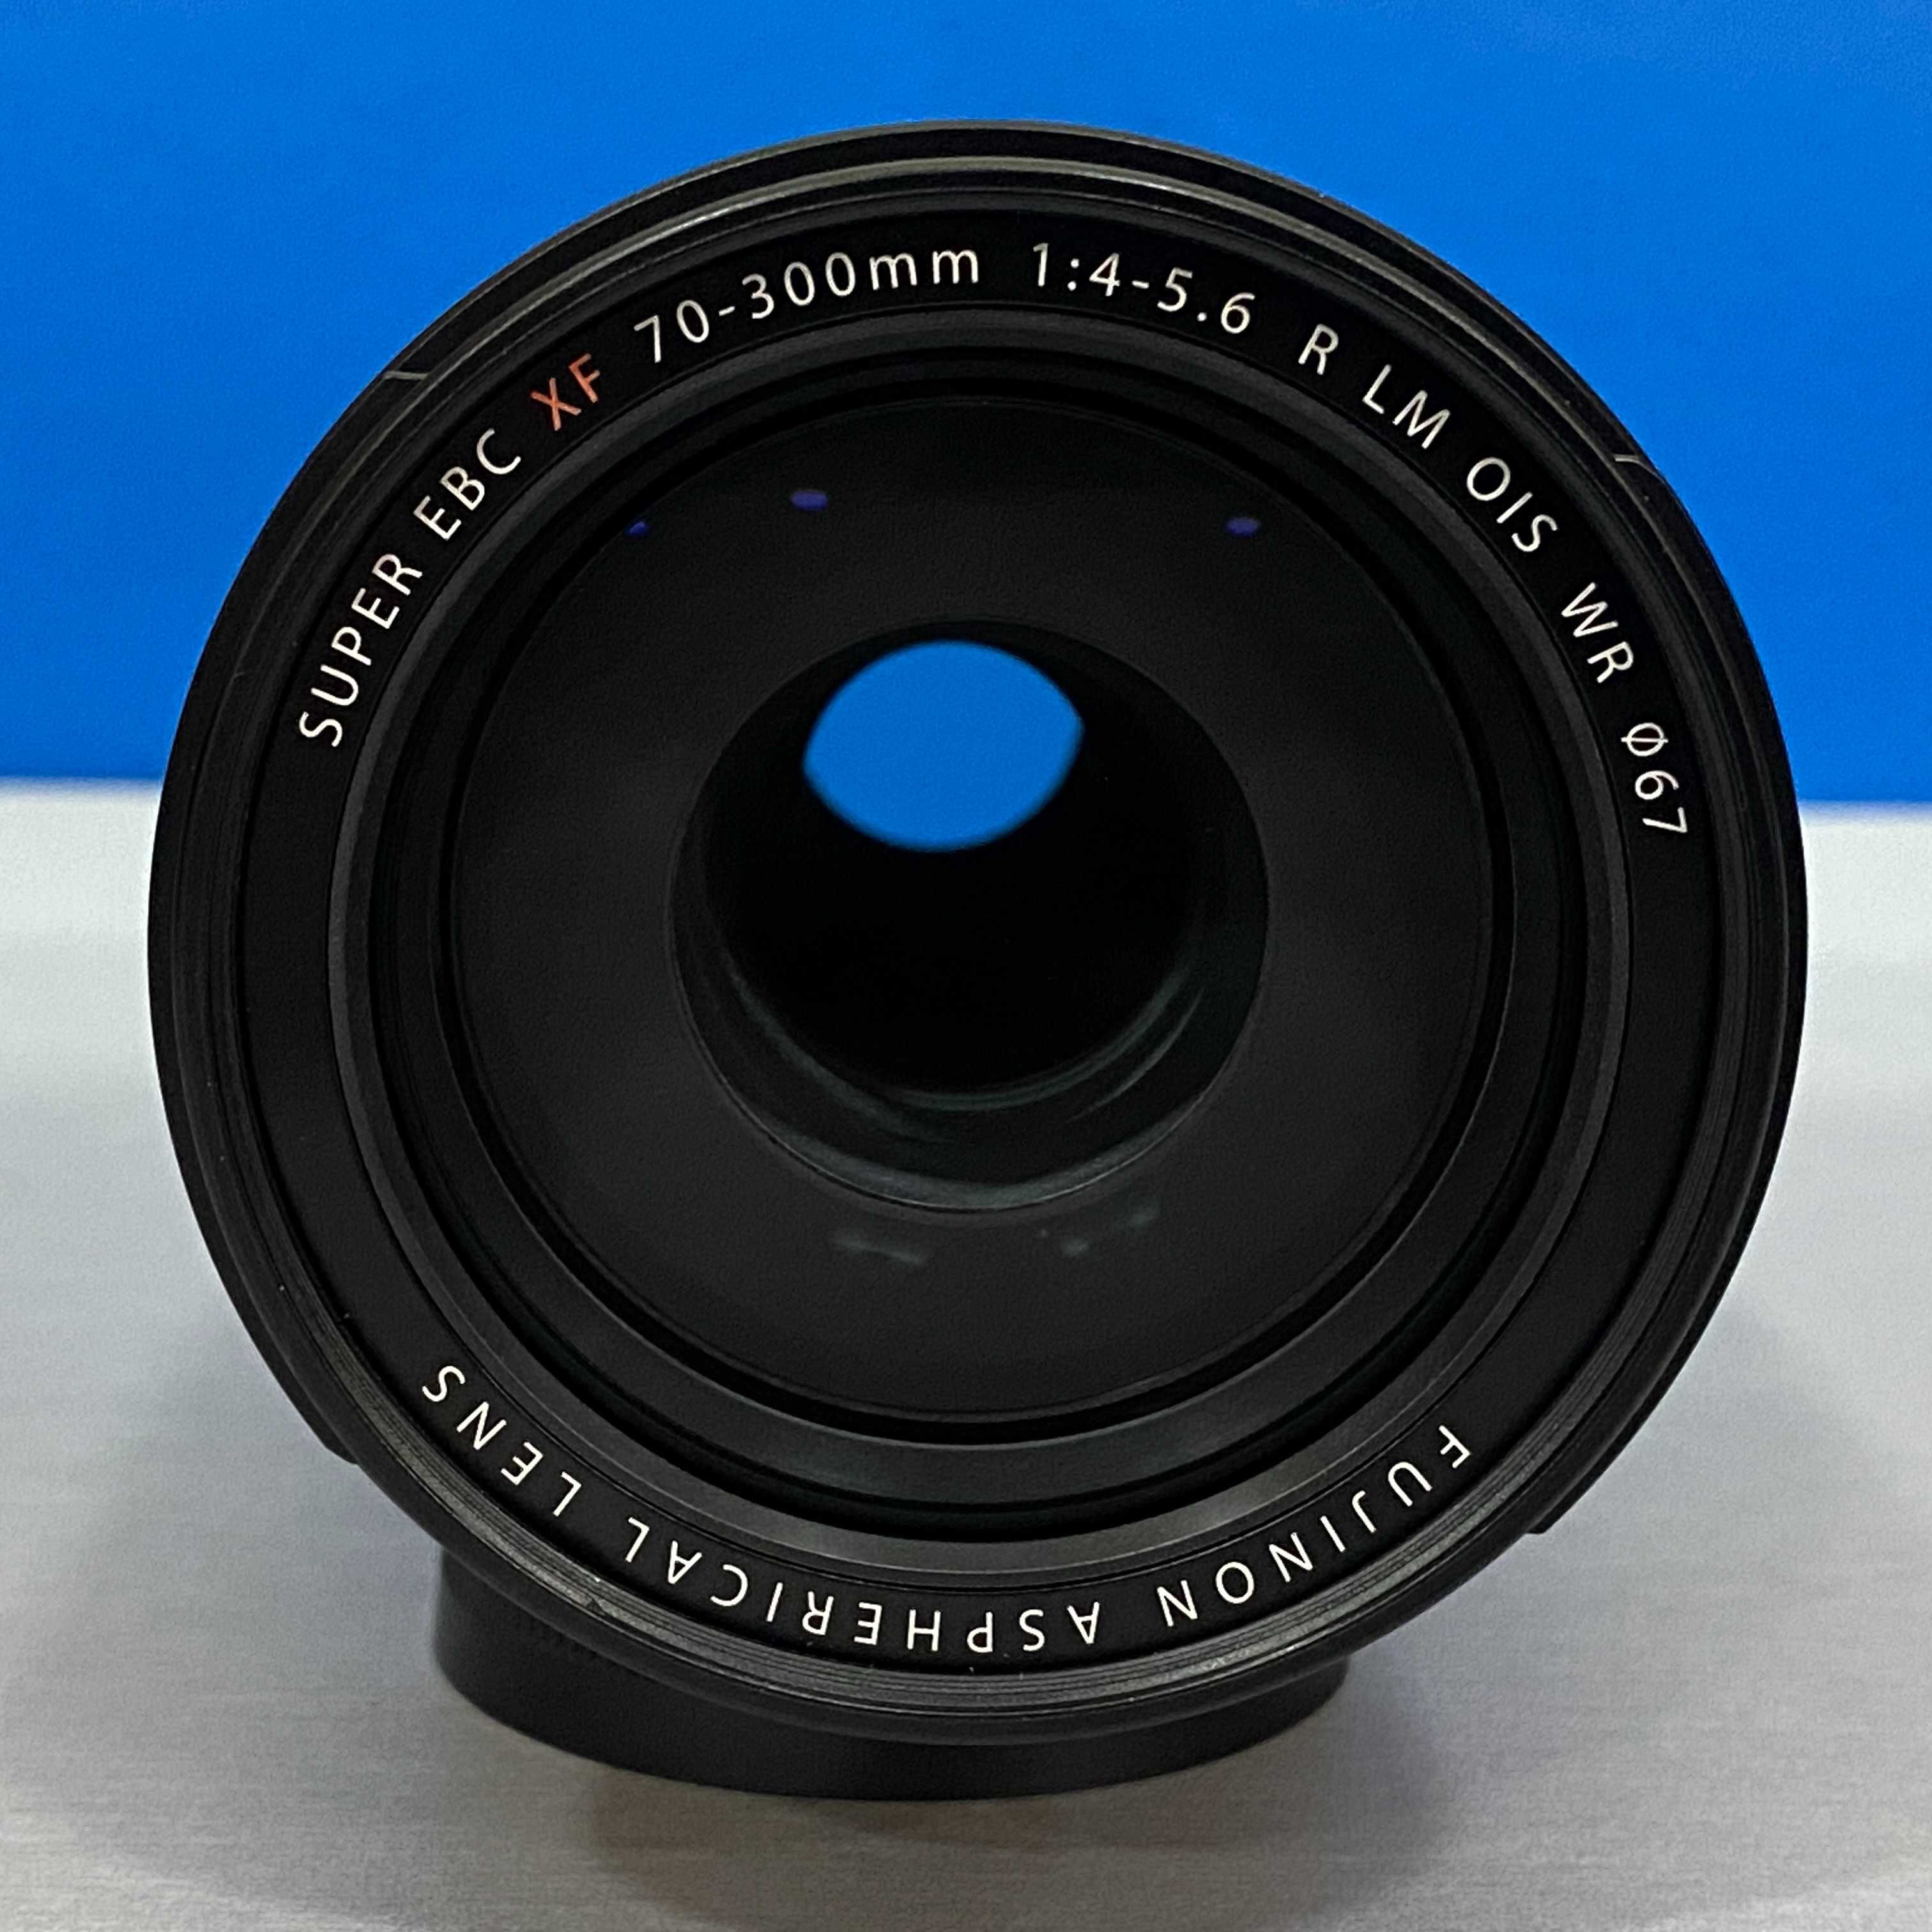 Fujifilm XF 70-300mm f/4-5.6 R LM OIS WR